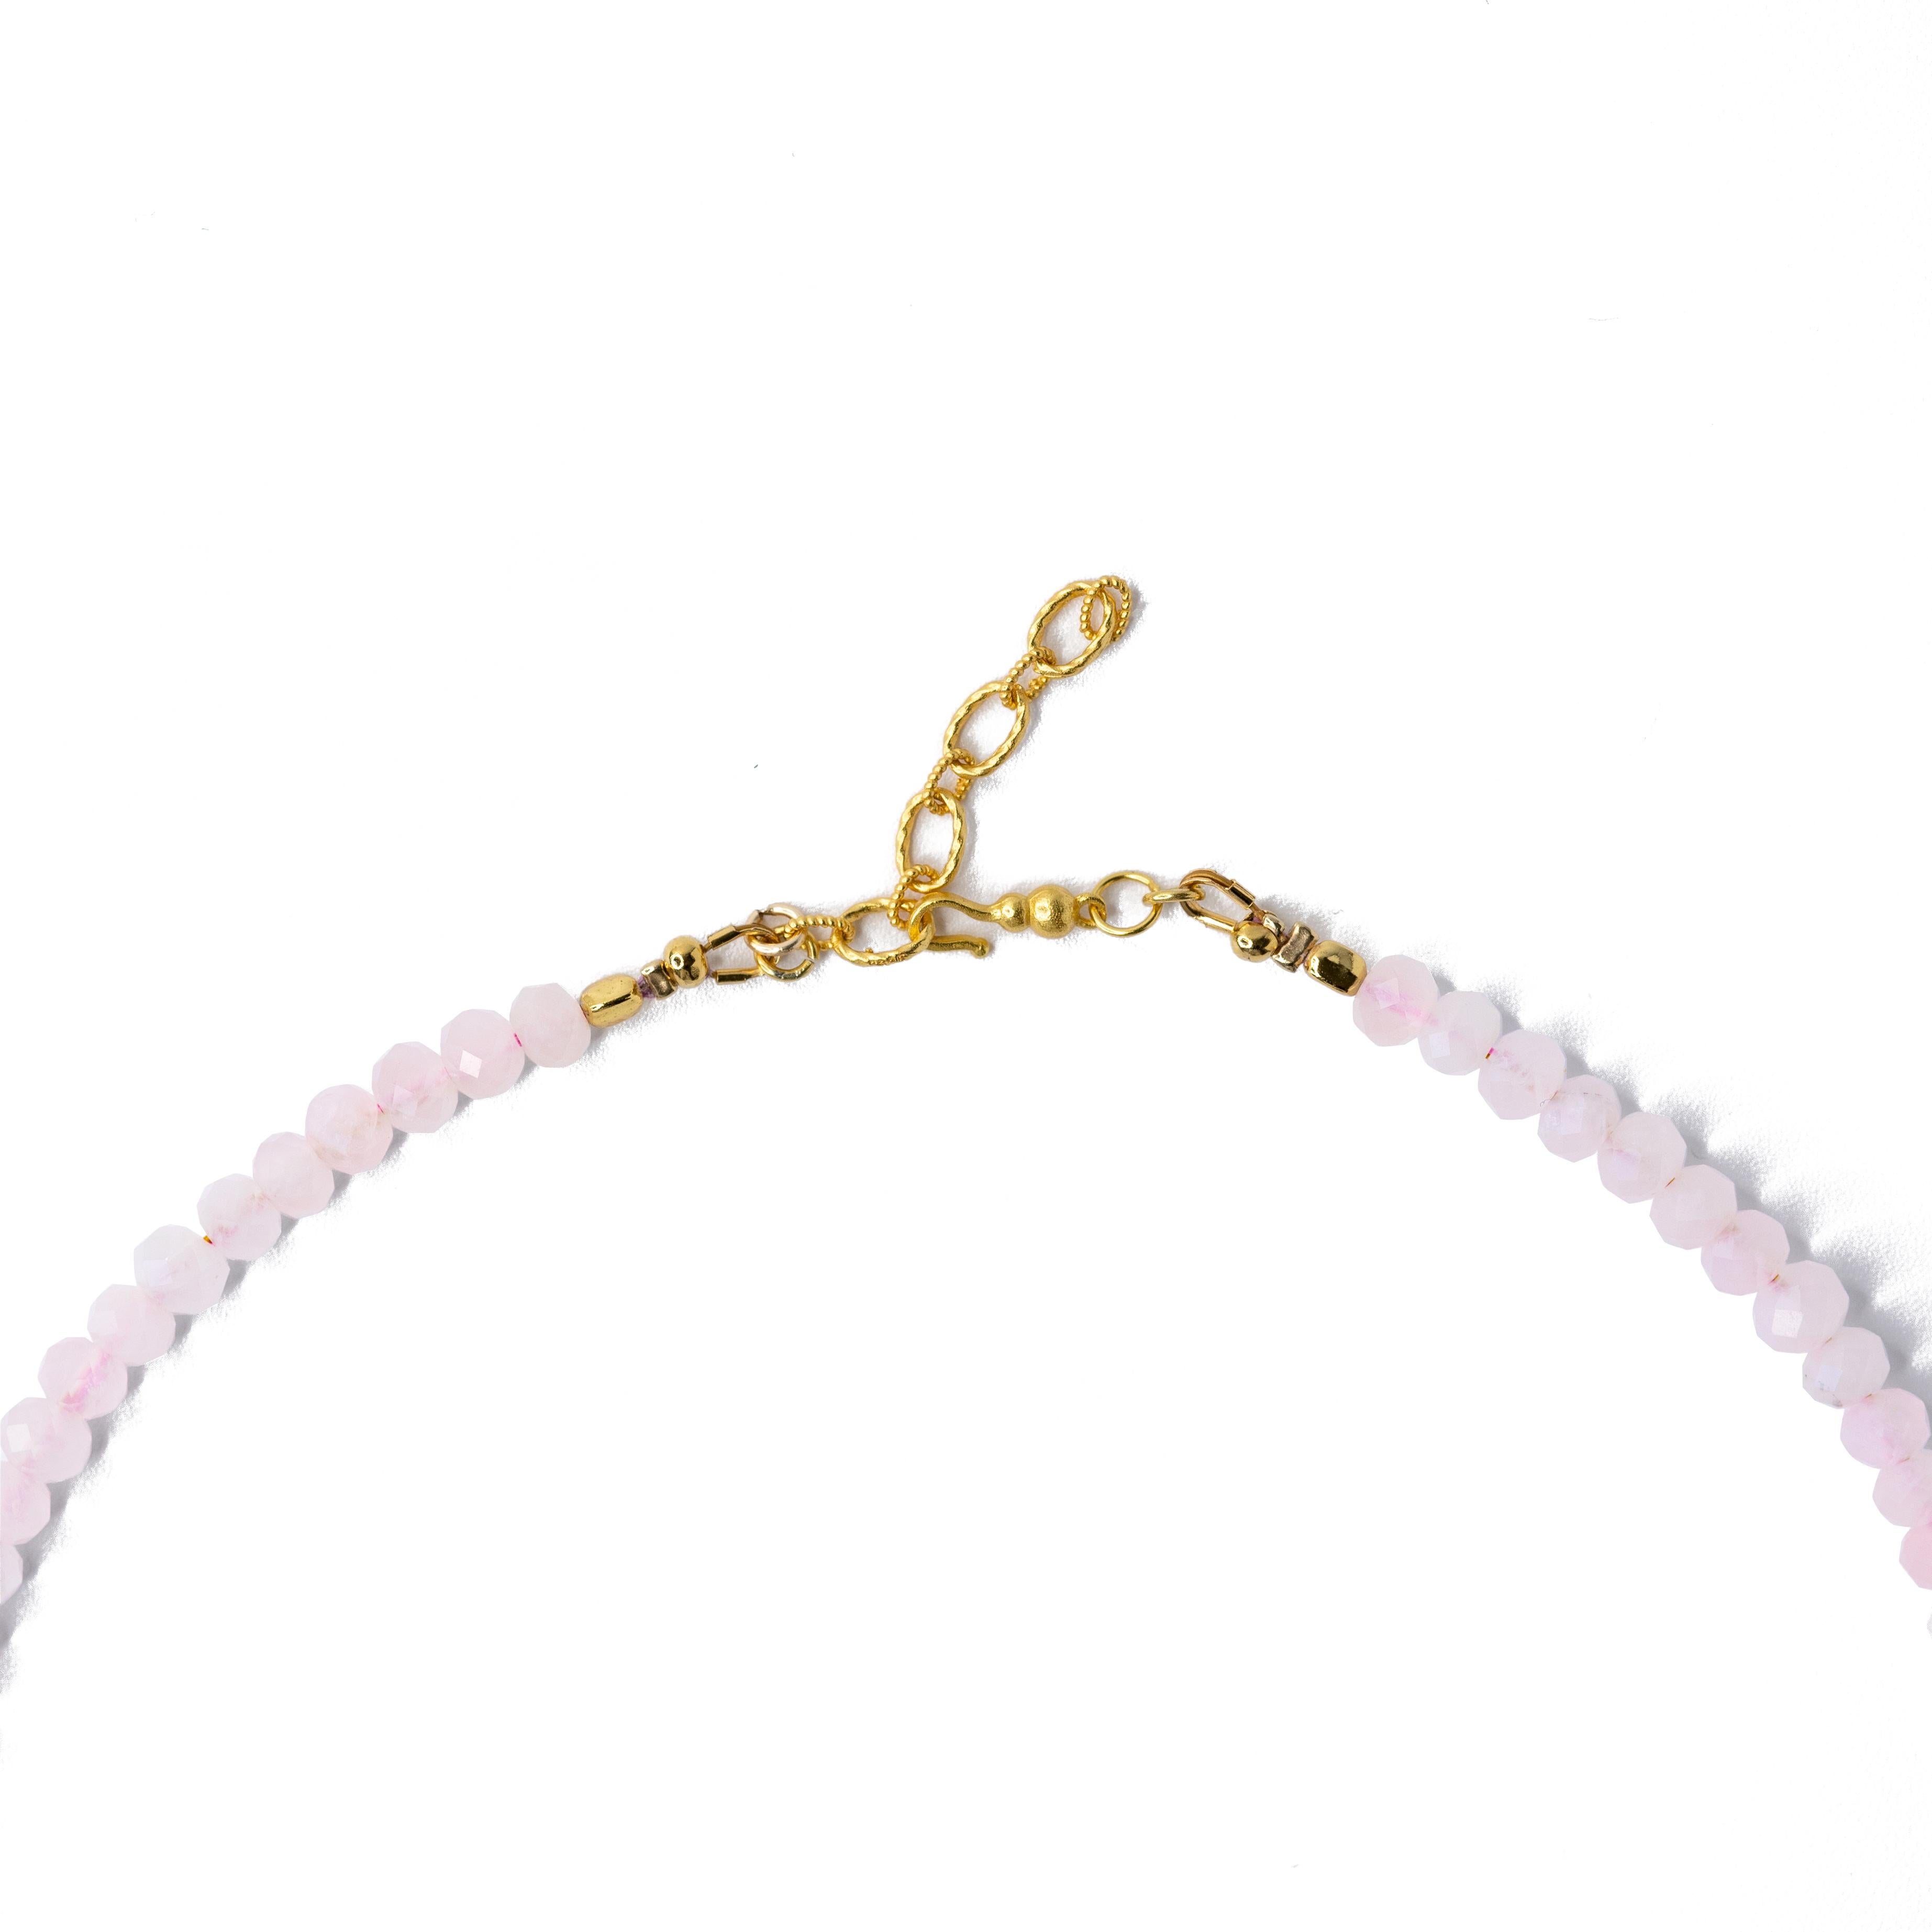 Décorez votre décolleté avec ce superbe collier ras du cou en perles d'or en quartz rose, fait à la main à la perfection. Son design unique de perles ajoute une touche d'élégance à votre tenue, ce qui en fait un accessoire parfait pour toute